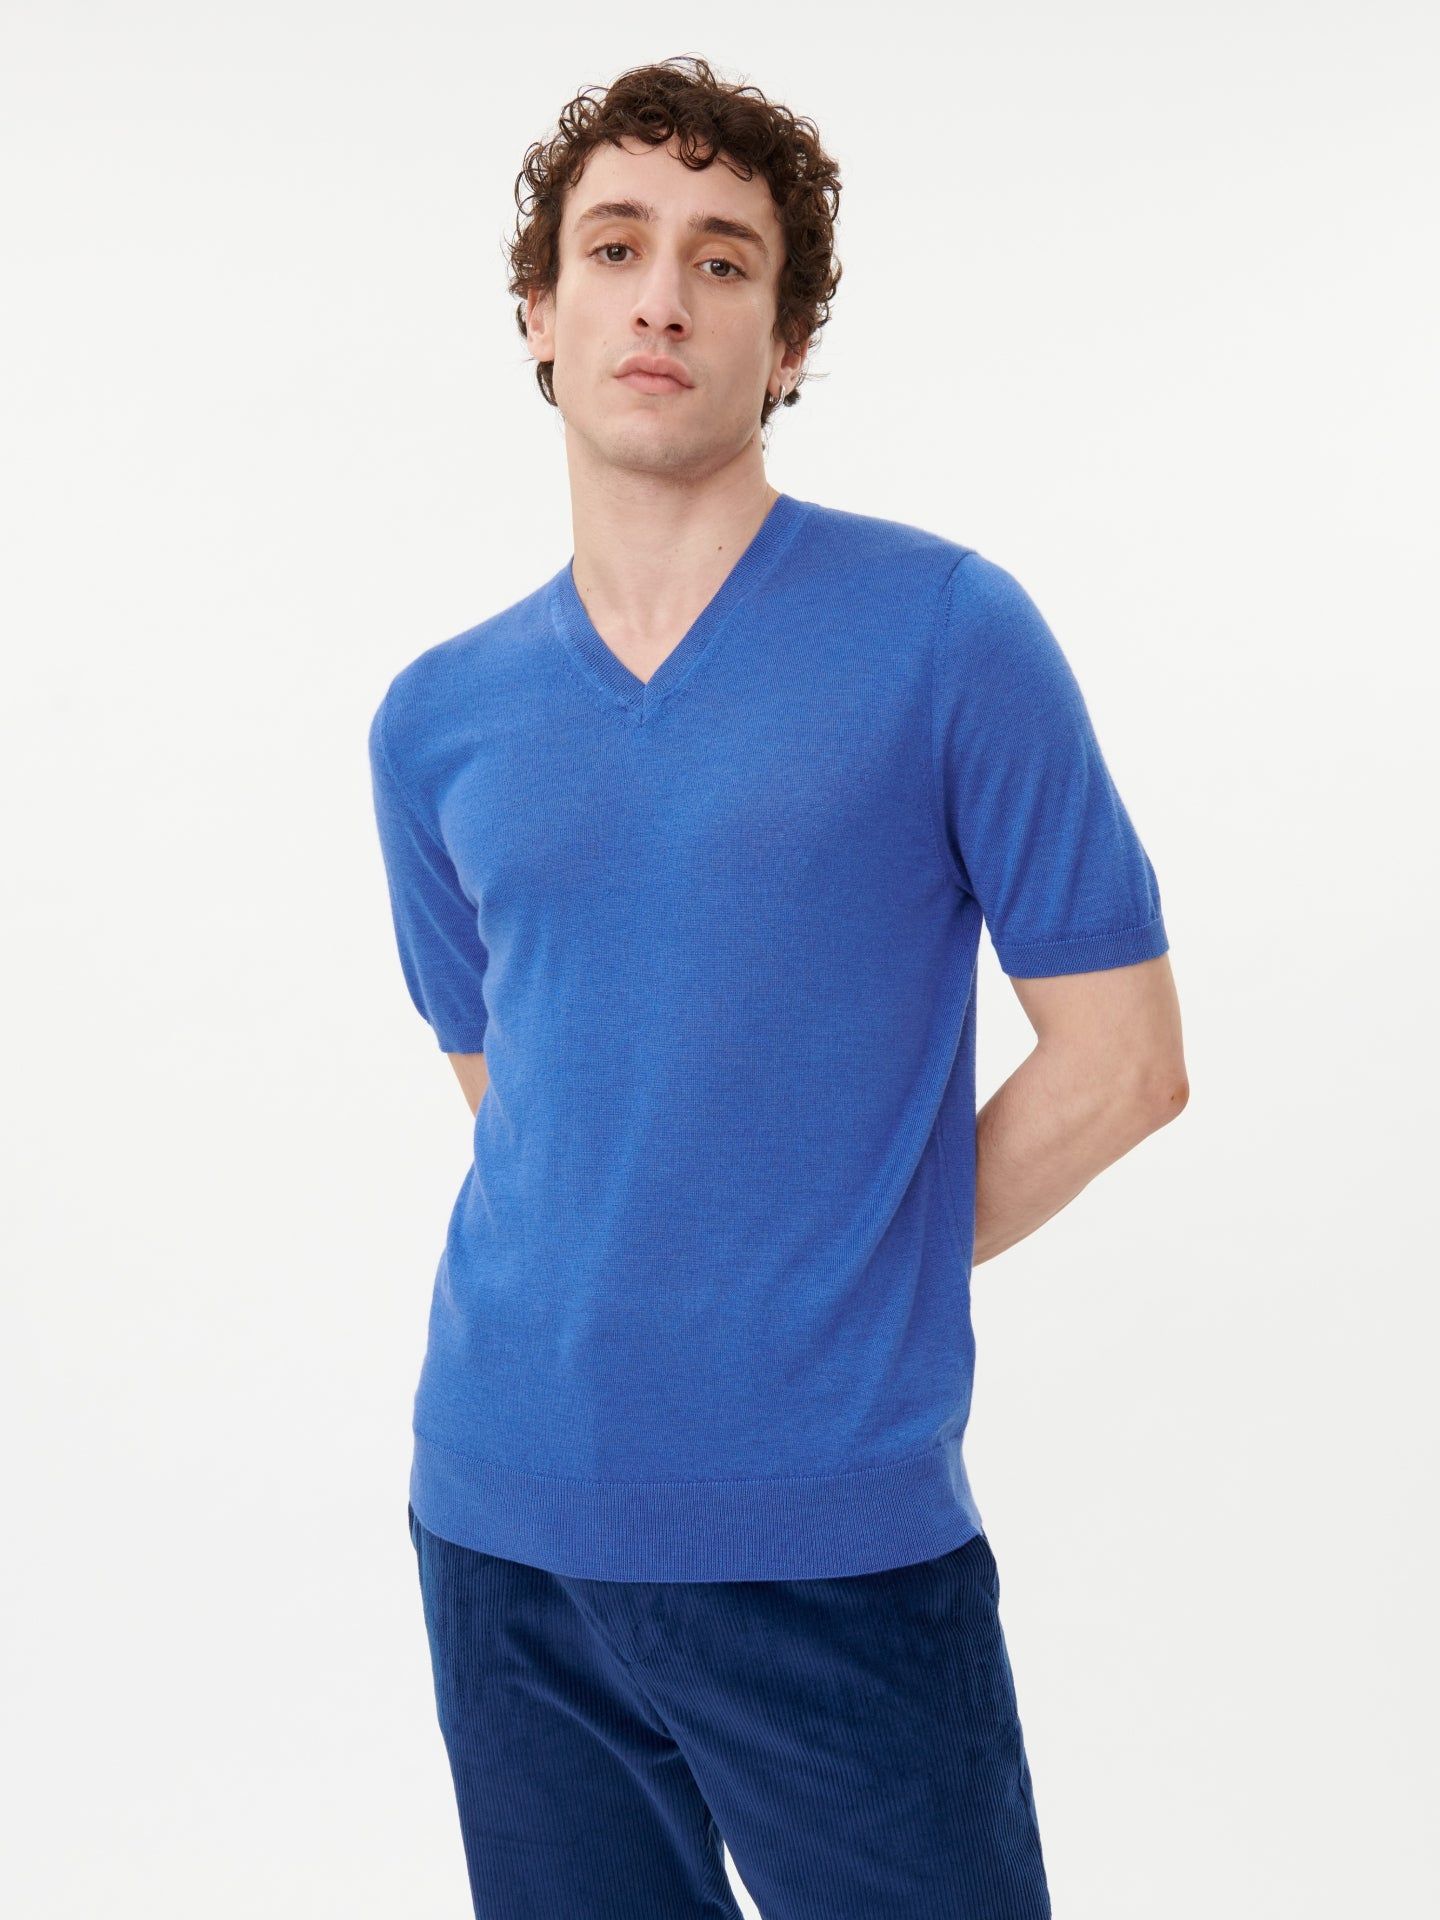 Men's Cashmere V-neck T-shirt Nautical Blue - Gobi Cashmere